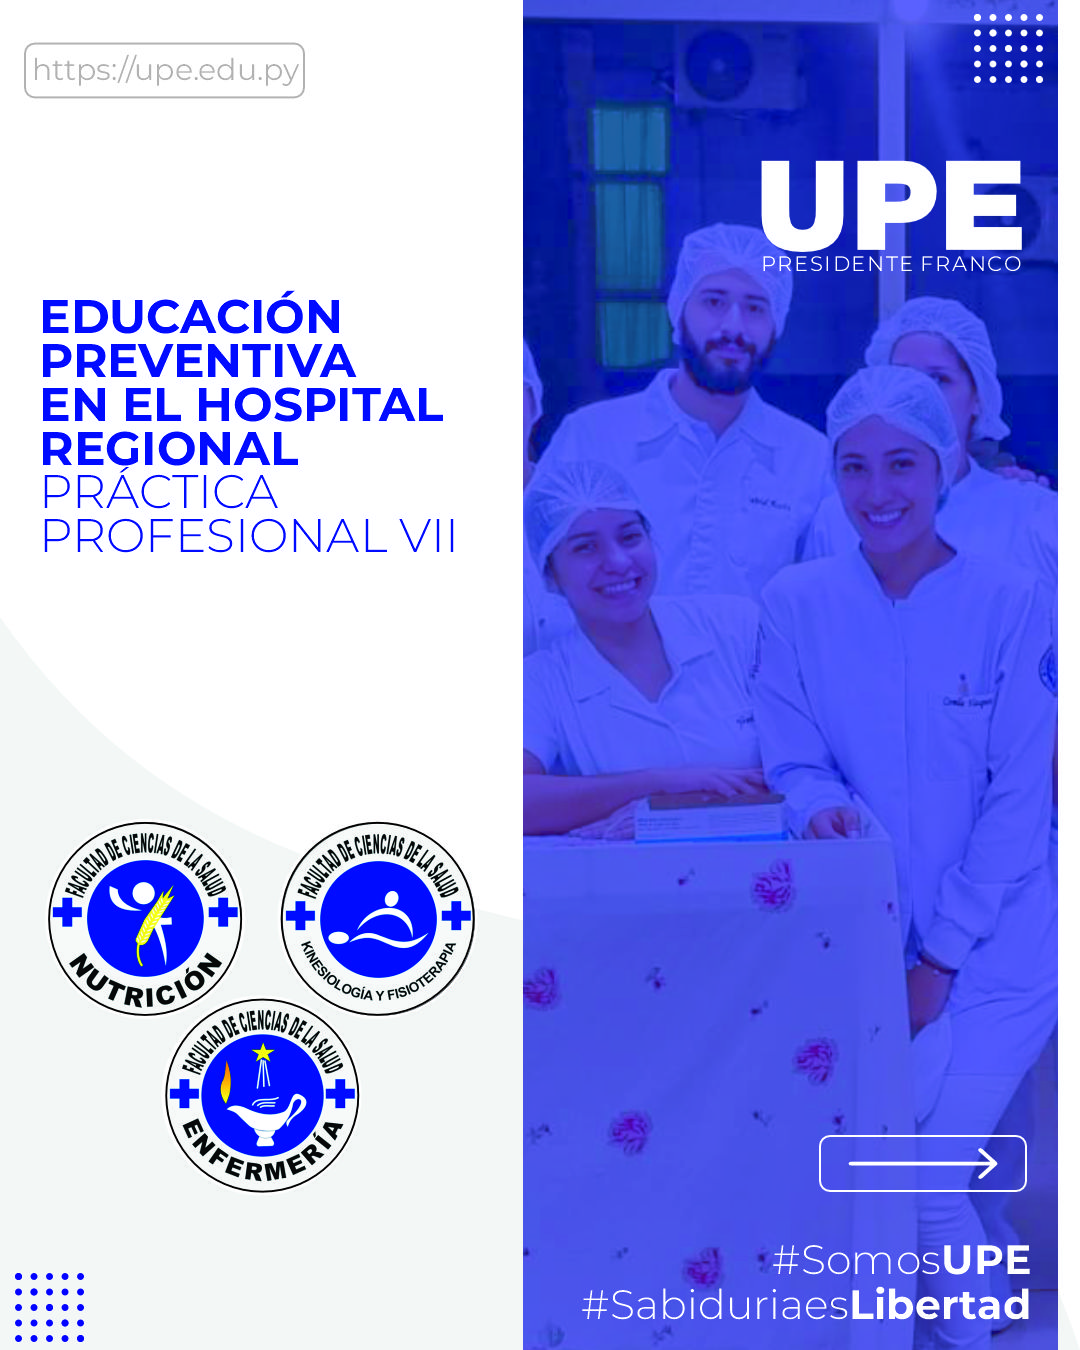 Educación Preventiva en el Hospital Regional: Formación Profesional en Enfermería